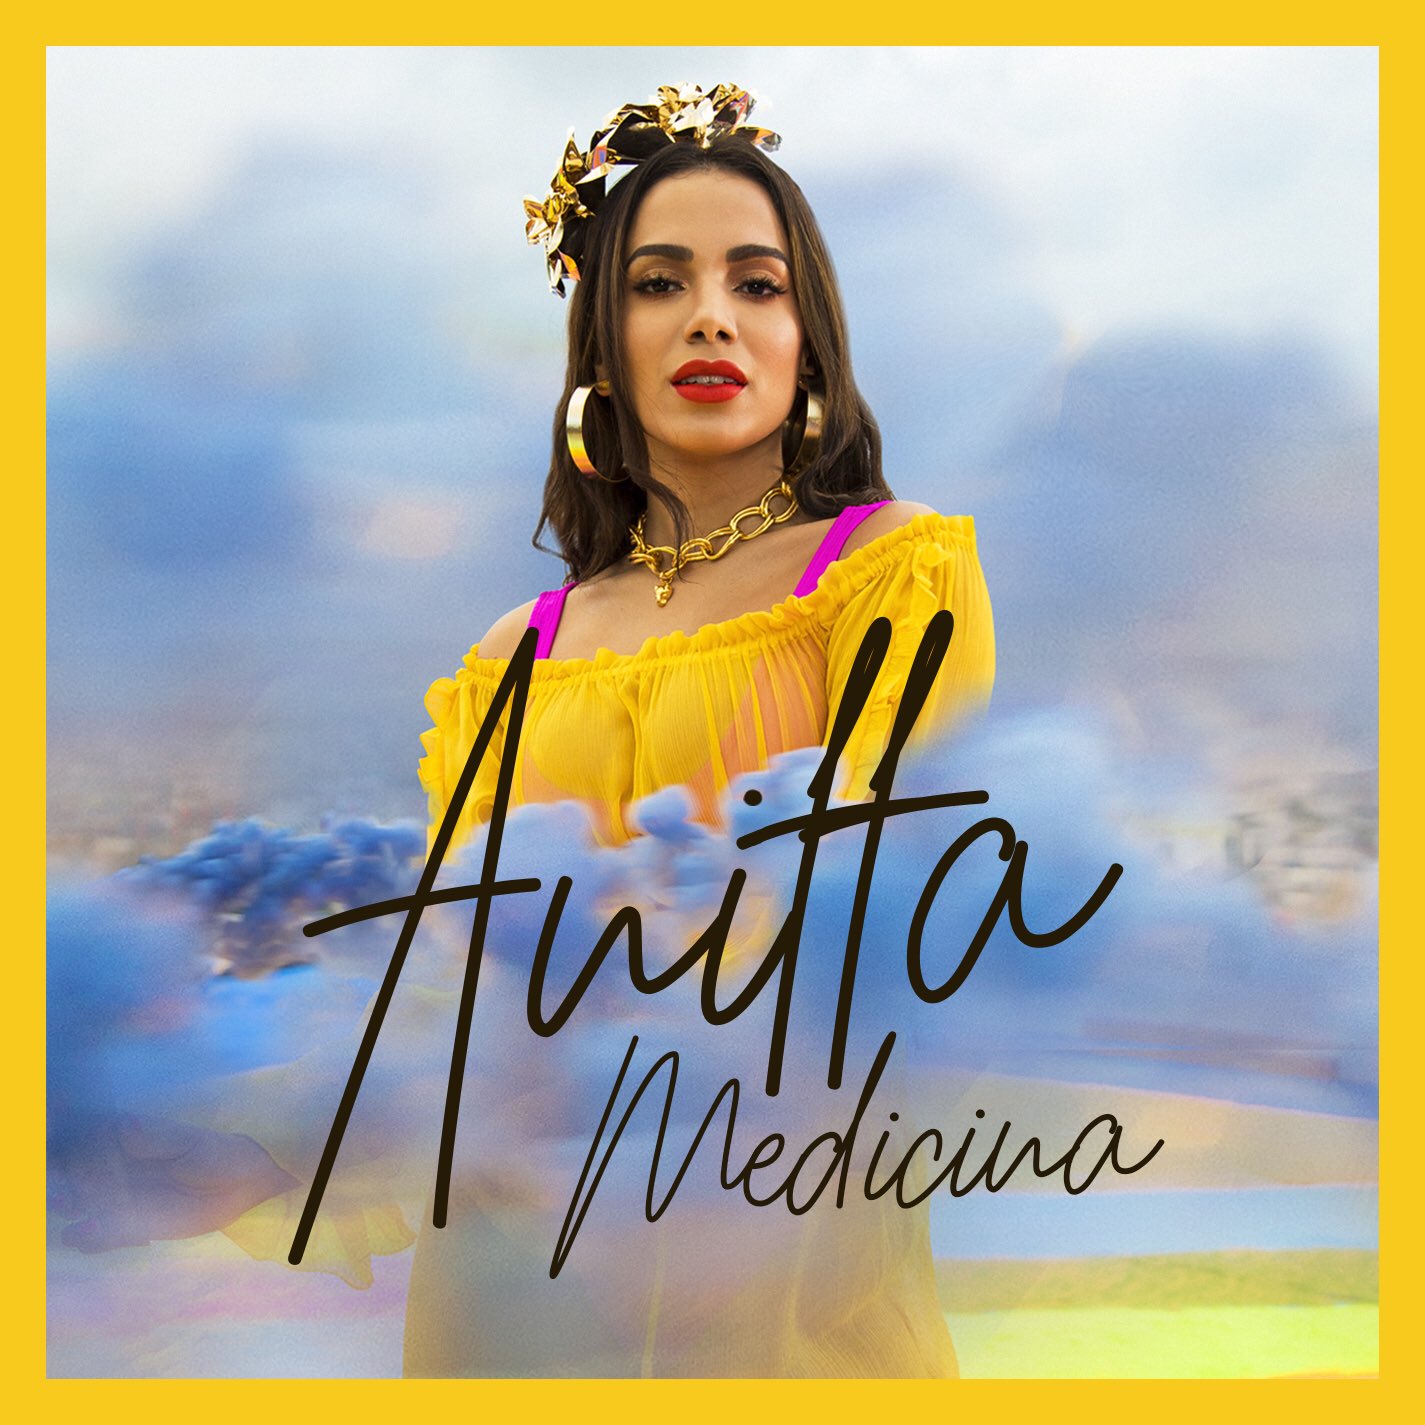 Ouça "Medicina", novo single de Anitta